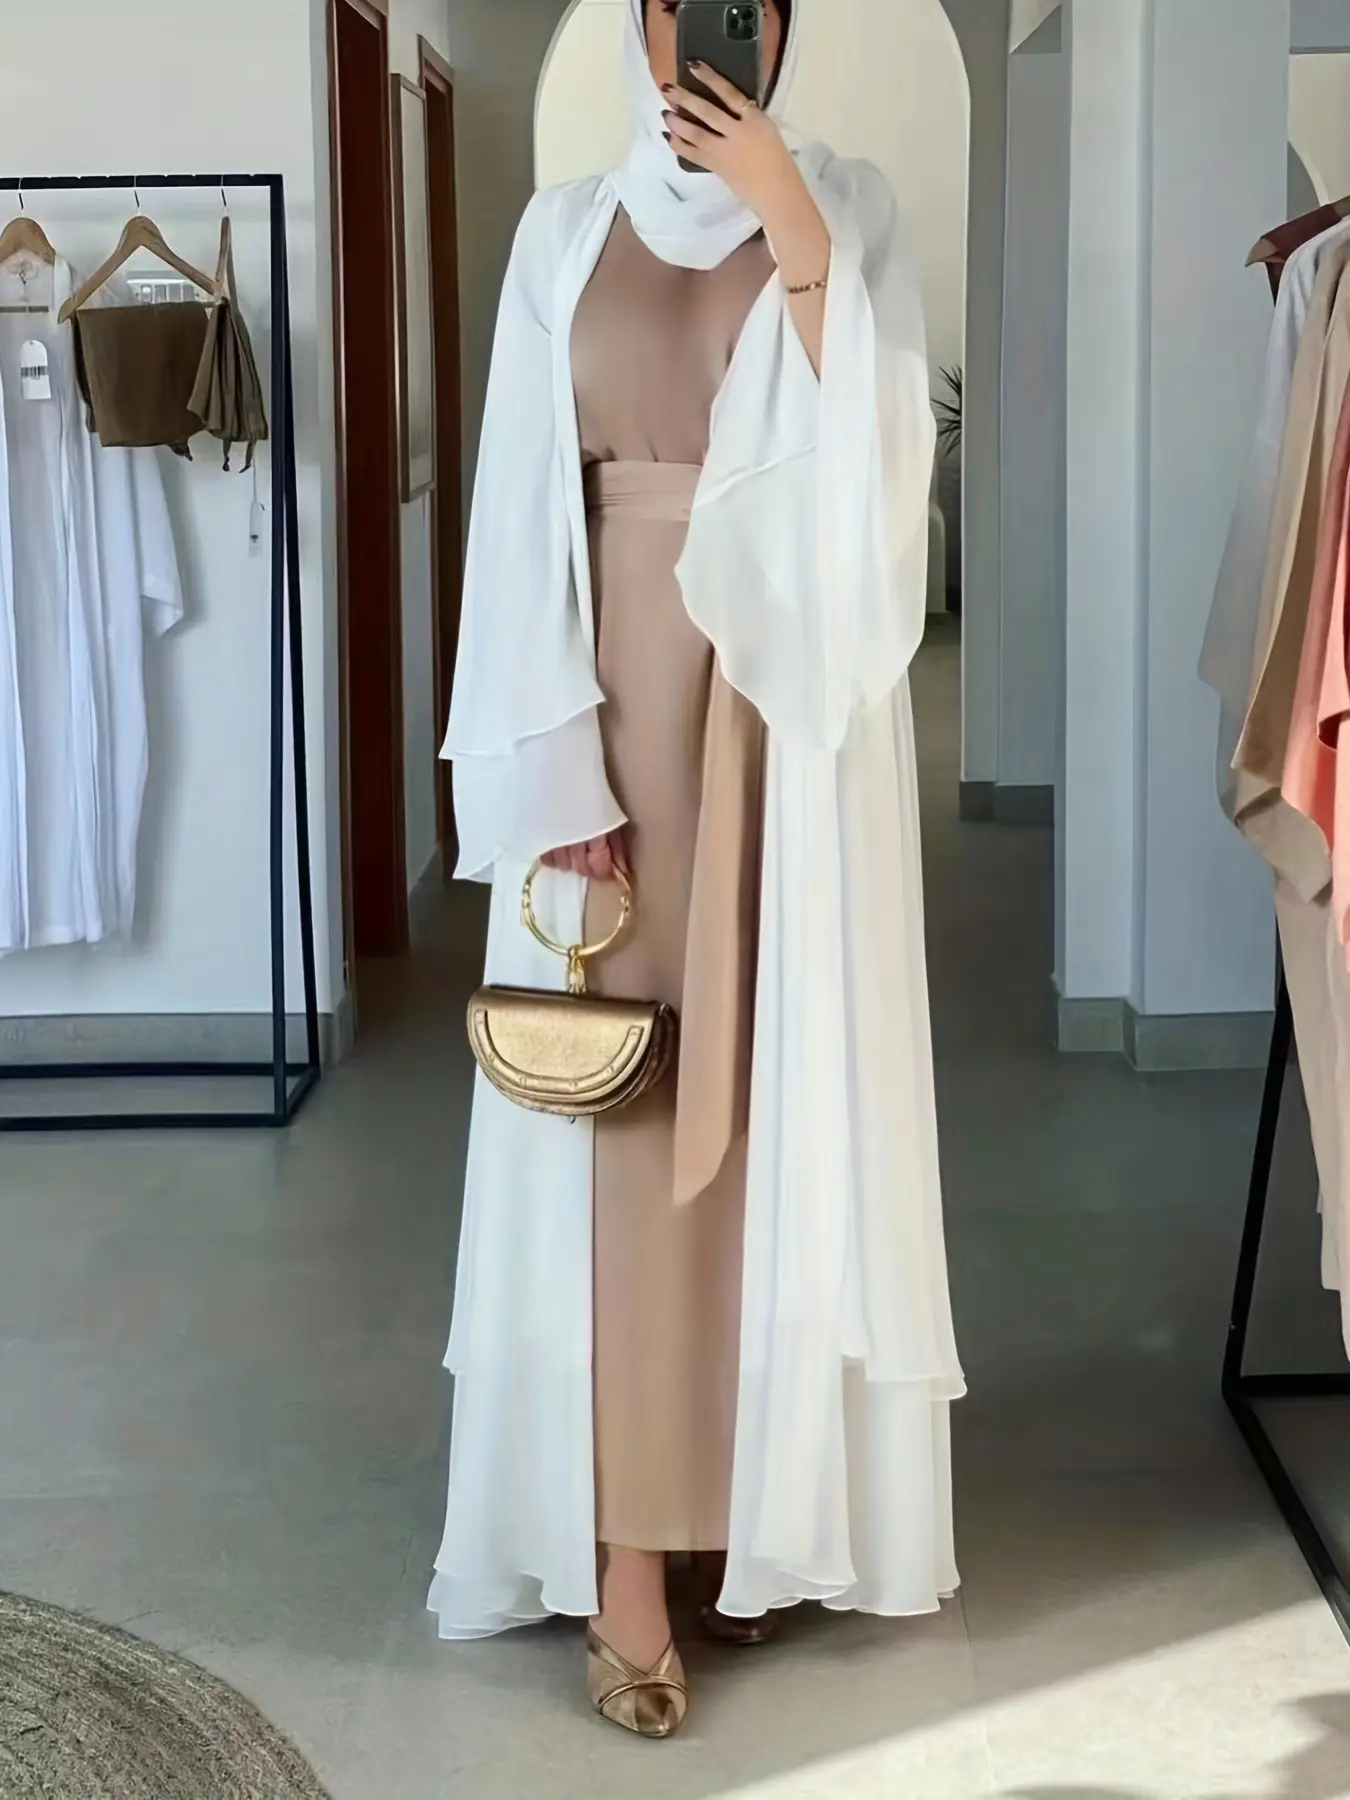 Großhandel Türkei elegantes EID Damen muslimisches Kleid Chiffon bescheidenes muslimisches Kleid passende Hjiab Kimono offen Dubai Abaya gewand Kardigan